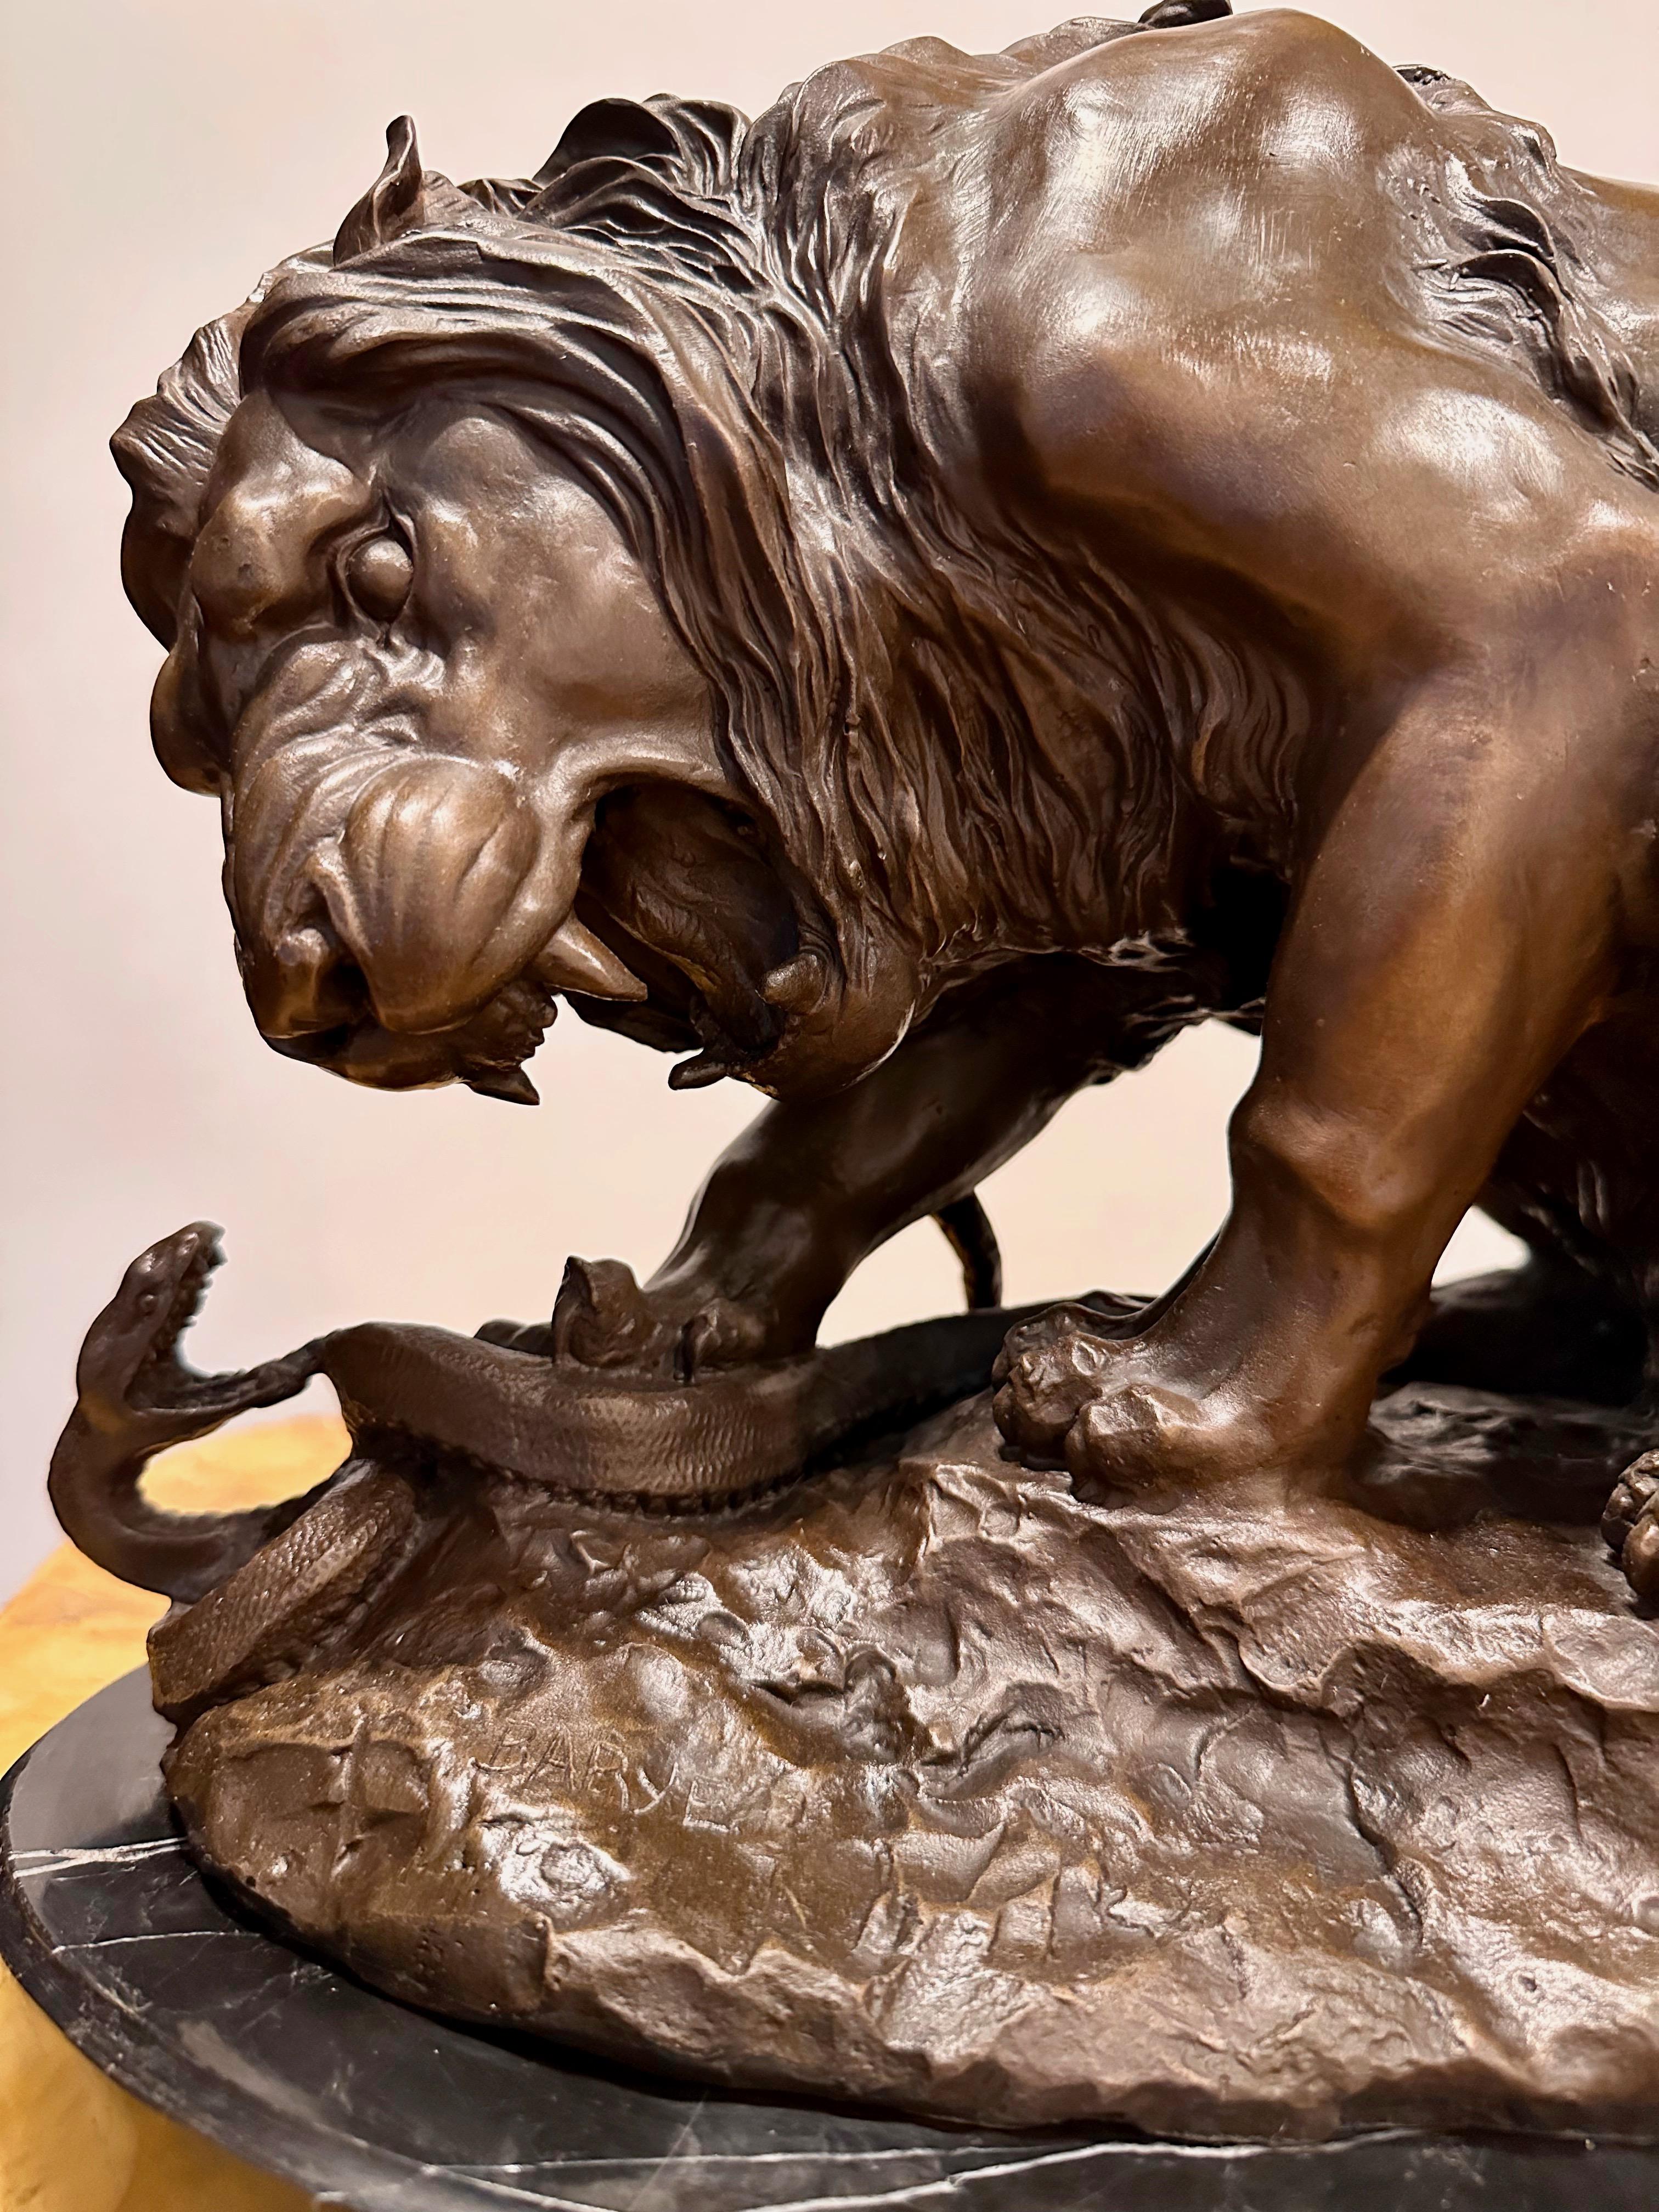 Antoine-Louis Barye (Paris, 1795-1875). Lion écrasant un serpent. Bronze à patine brune signé Barye sur le côté gauche de la base. La sculpture en bronze repose sur un socle en marbre noir.

Ce bronze spectaculaire représentant le 